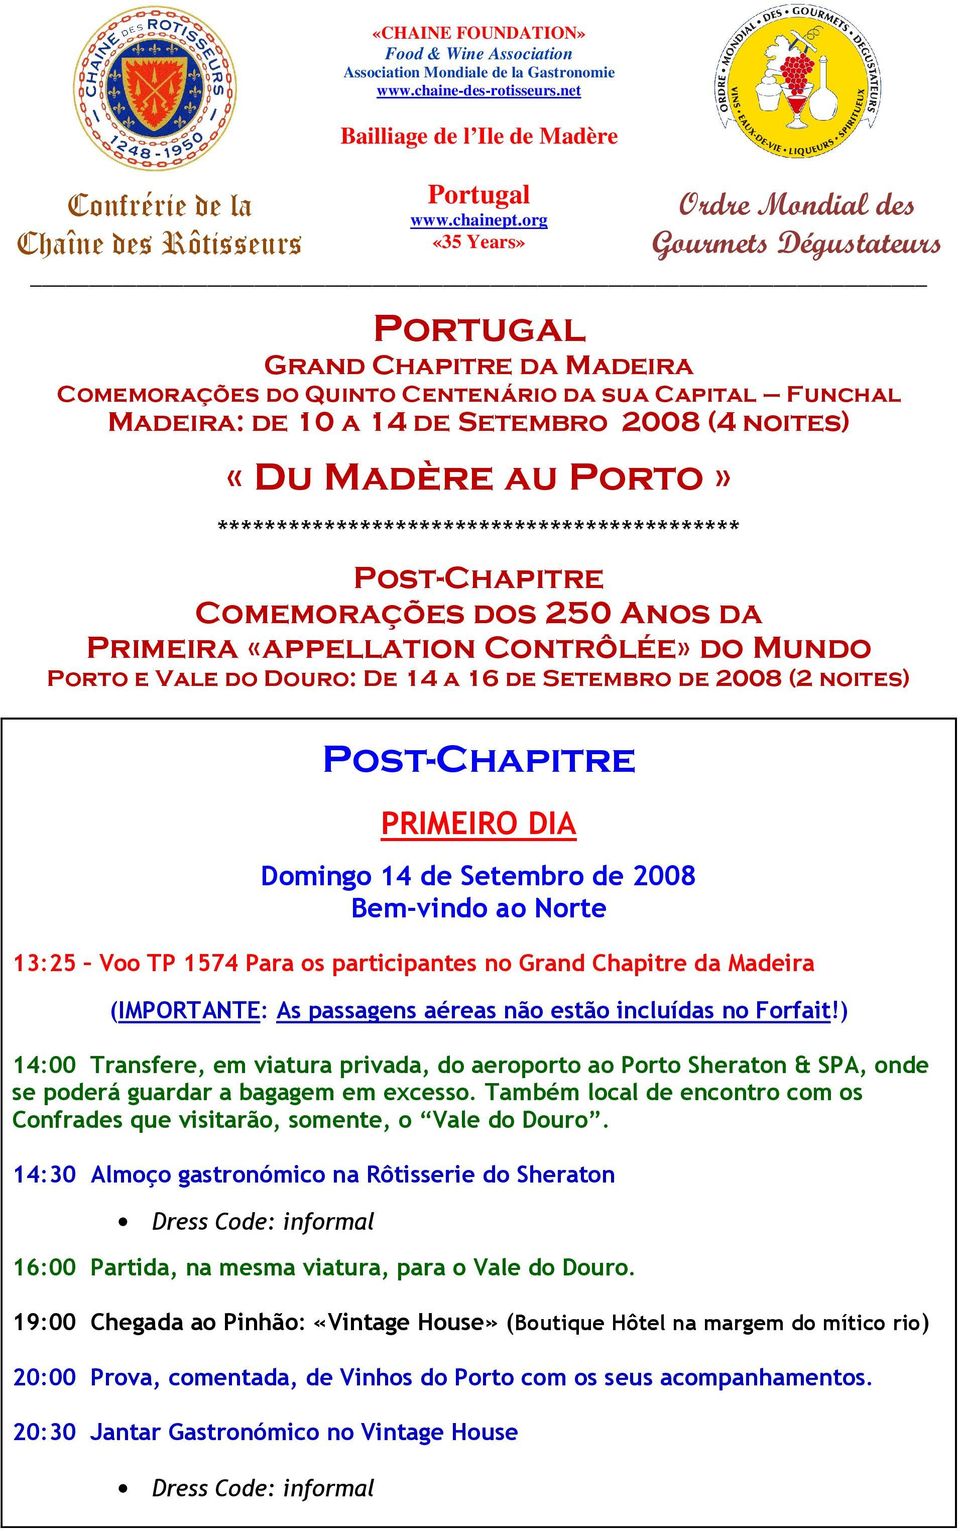 Porto» ******************************************** Post-Chapitre Comemorações dos 250 Anos da Primeira «appellation Contrôlée» do Mundo Porto e Vale do Douro: De 14 a 16 de Setembro de 2008 (2